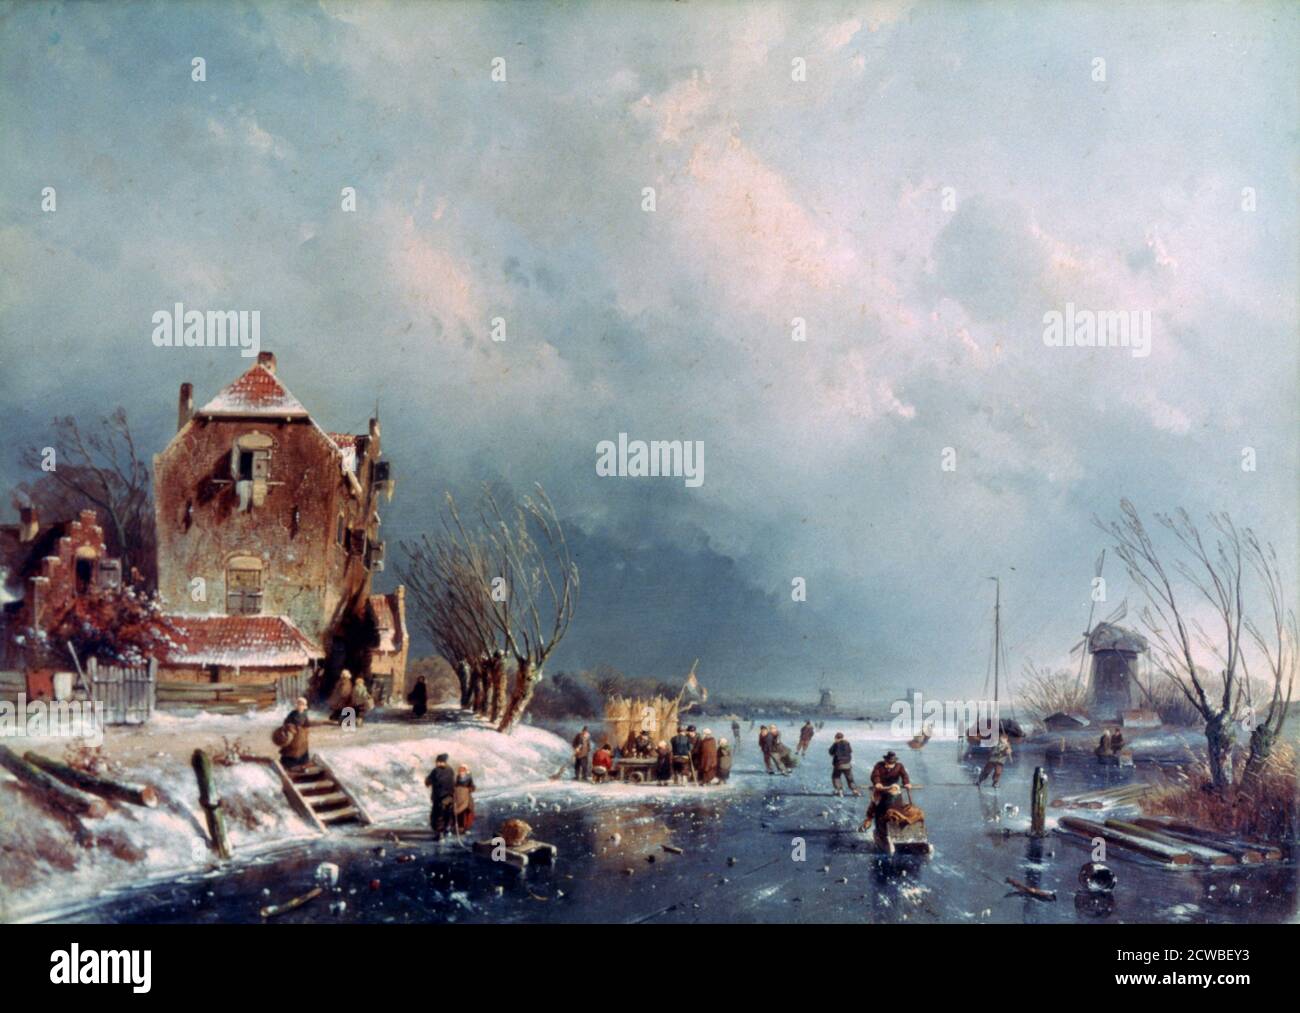 Frozen River', 1787-1870. Artista: Andreas Schelfhout. Andreas Schelfhout era un pittore, etcher e litografo olandese, conosciuto per i suoi dipinti paesaggistici e romantici. Foto Stock